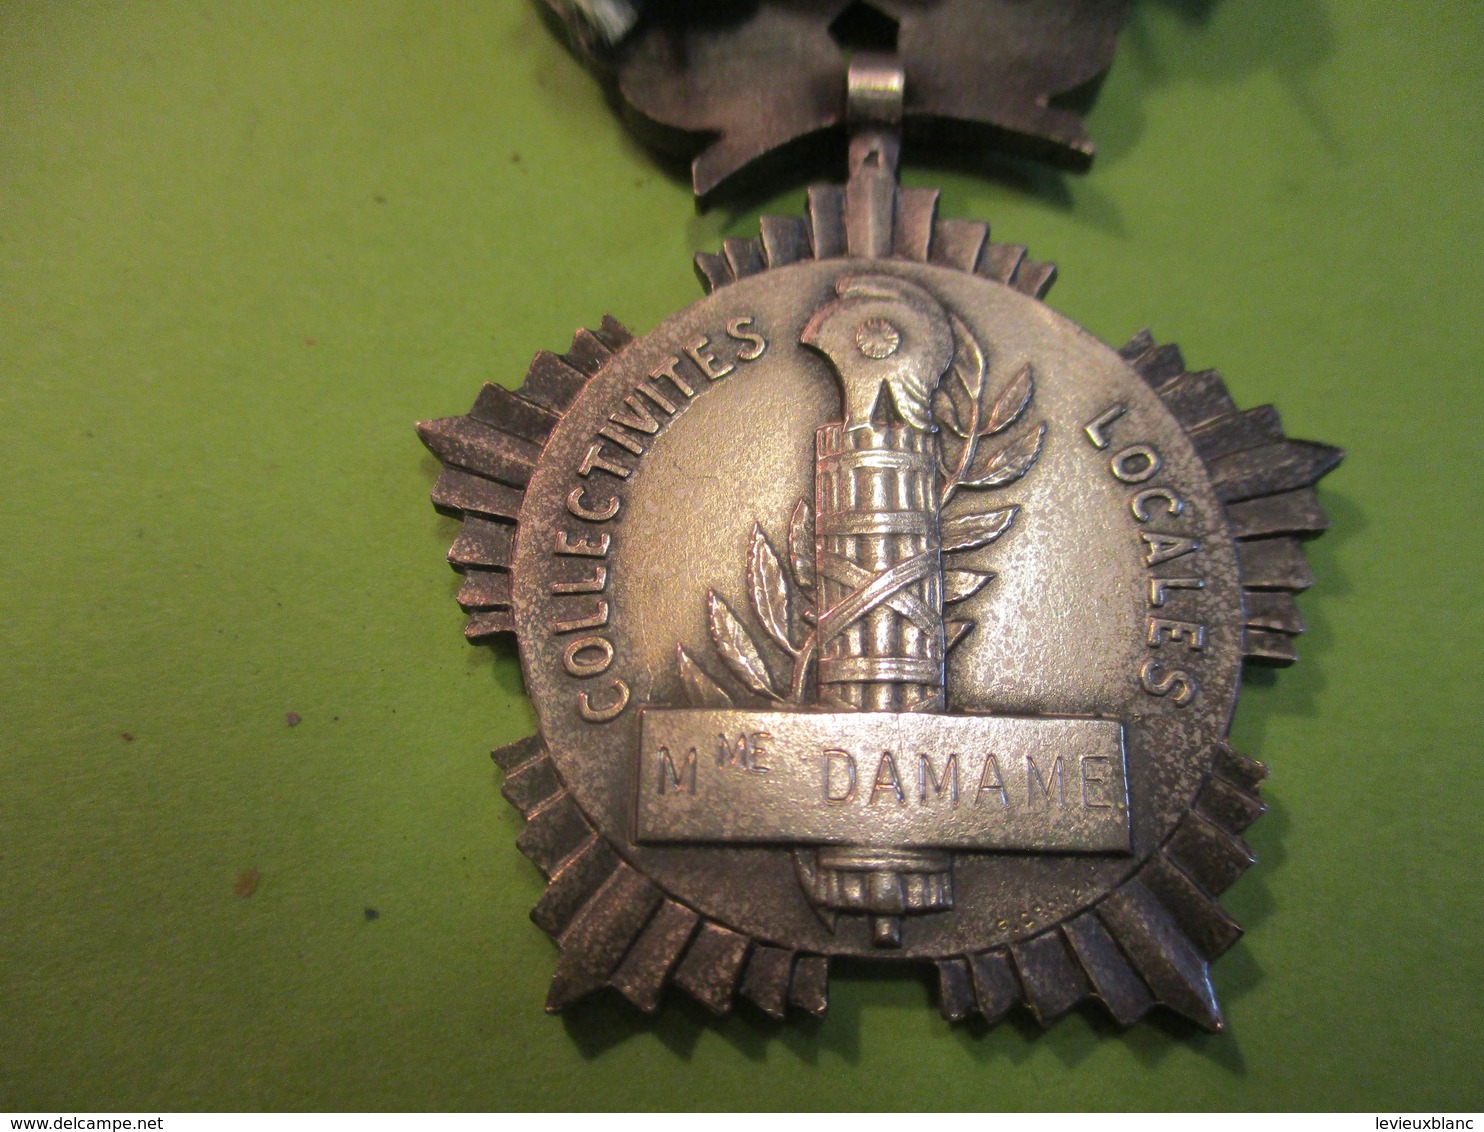 Médaille D'Honneur Collectivités Locales /République Française/ Mme DAMAME/ G Crouzat /          MED317